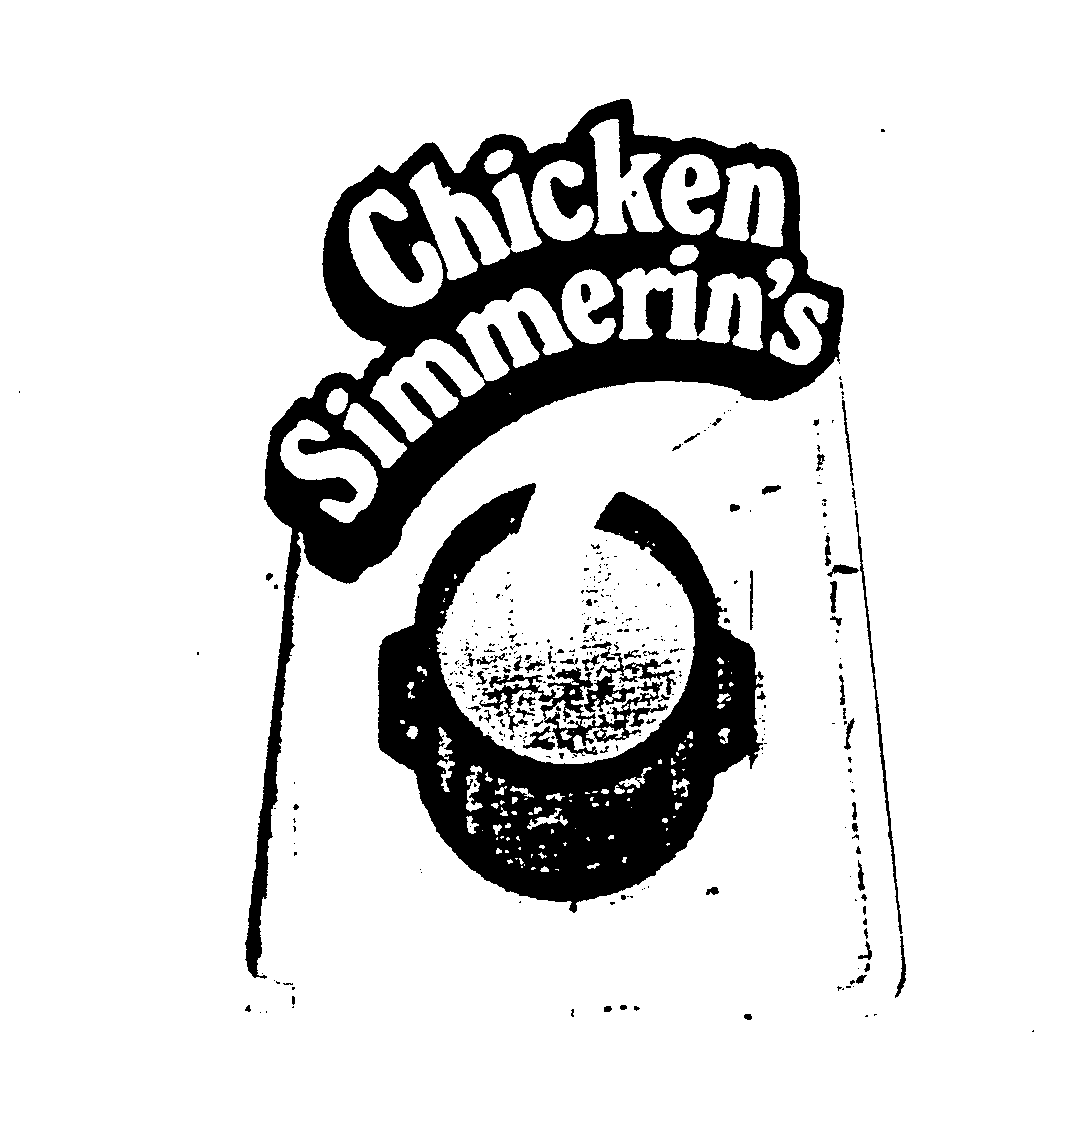  CHICKEN SIMMERIN'S